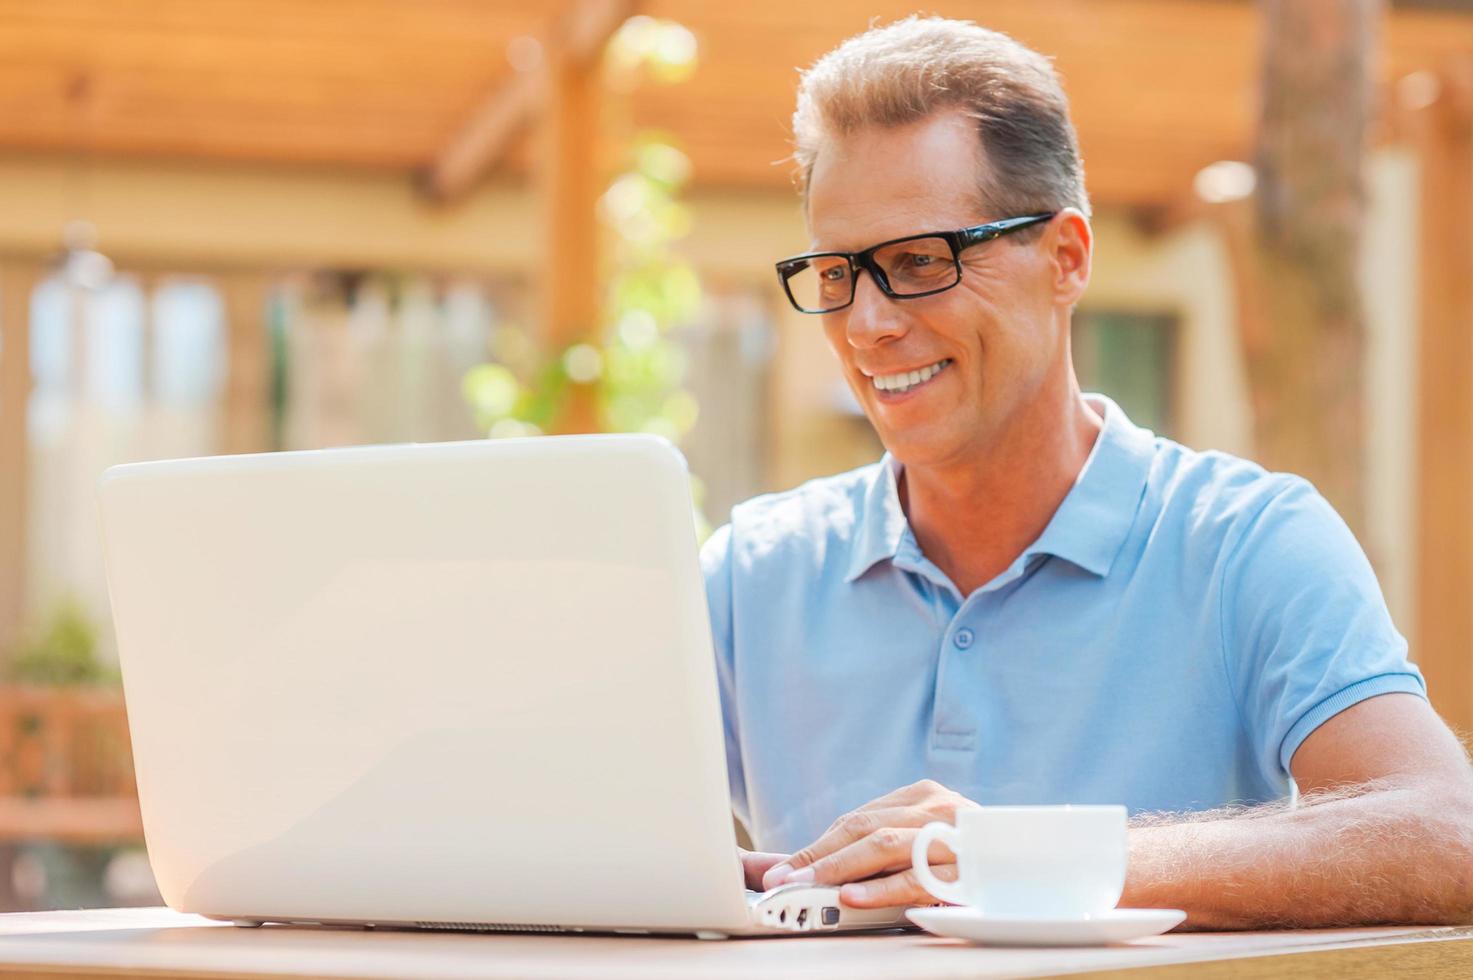 appréciant son travail sur l'air frais. joyeux homme mûr travaillant sur un ordinateur portable et souriant tout en étant assis à la table à l'extérieur avec la maison en arrière-plan photo